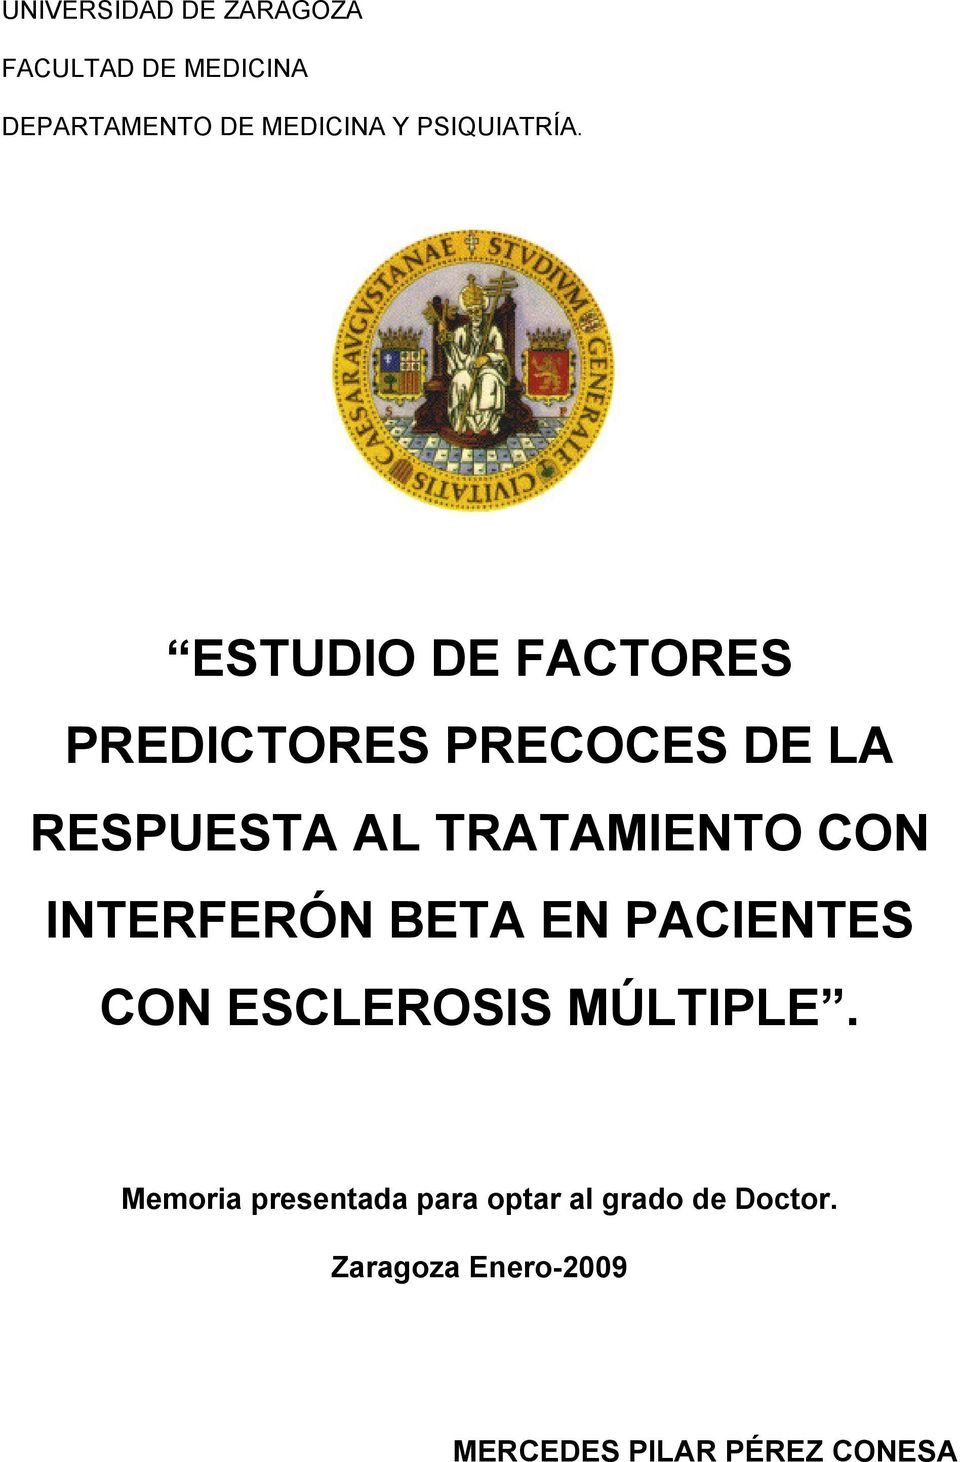 ESTUDIO DE FACTORES PREDICTORES PRECOCES DE LA RESPUESTA AL TRATAMIENTO CON